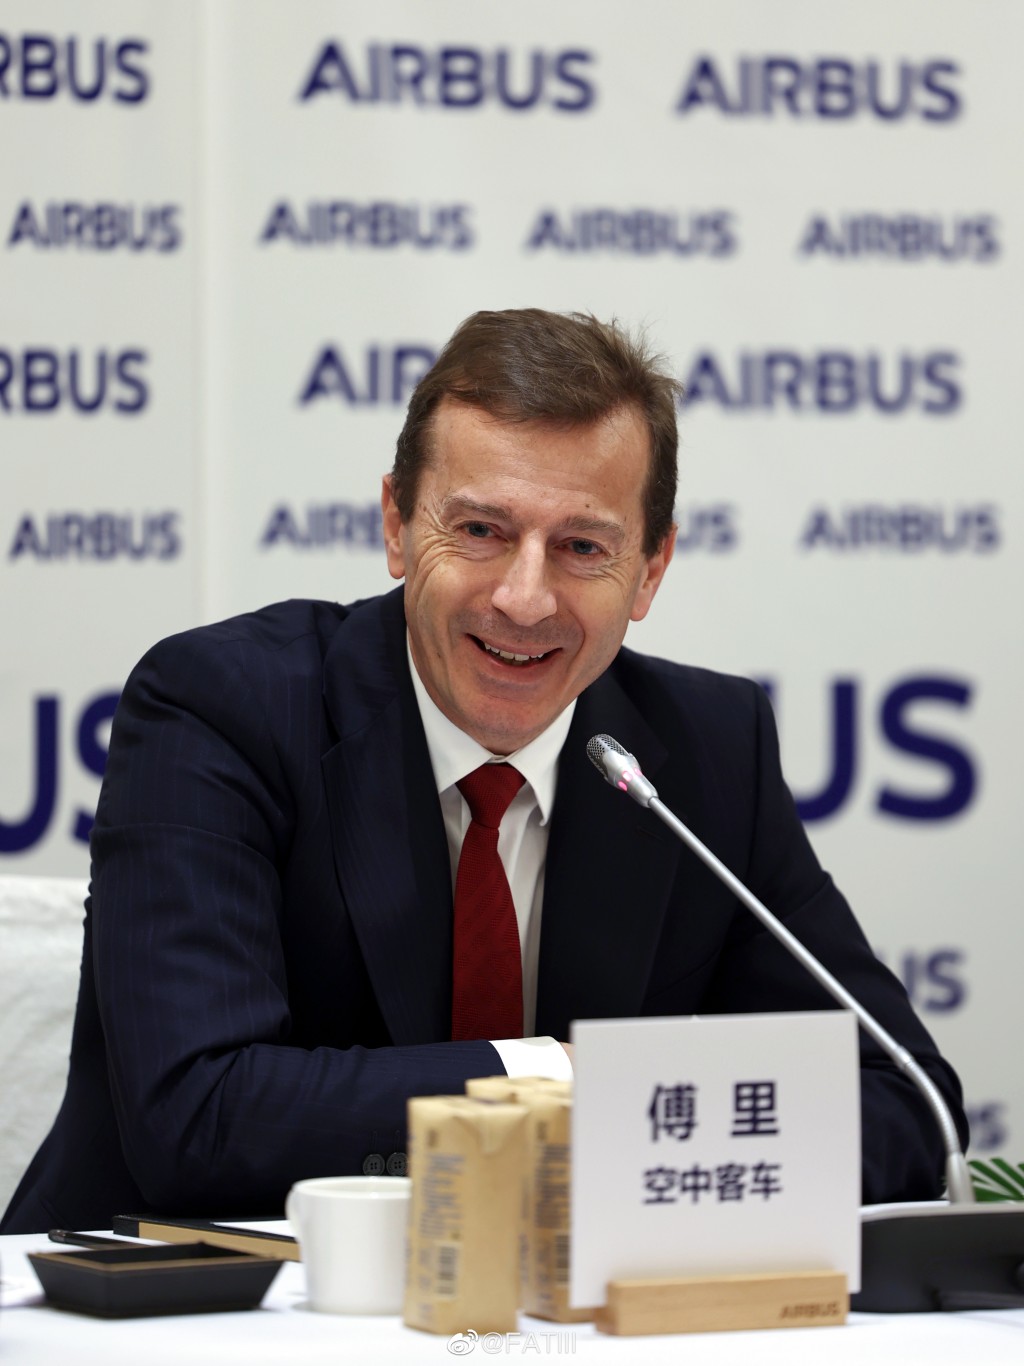 空中客車（空中巴士公司，Airbus）行政總裁傅里。 微博/FATIII